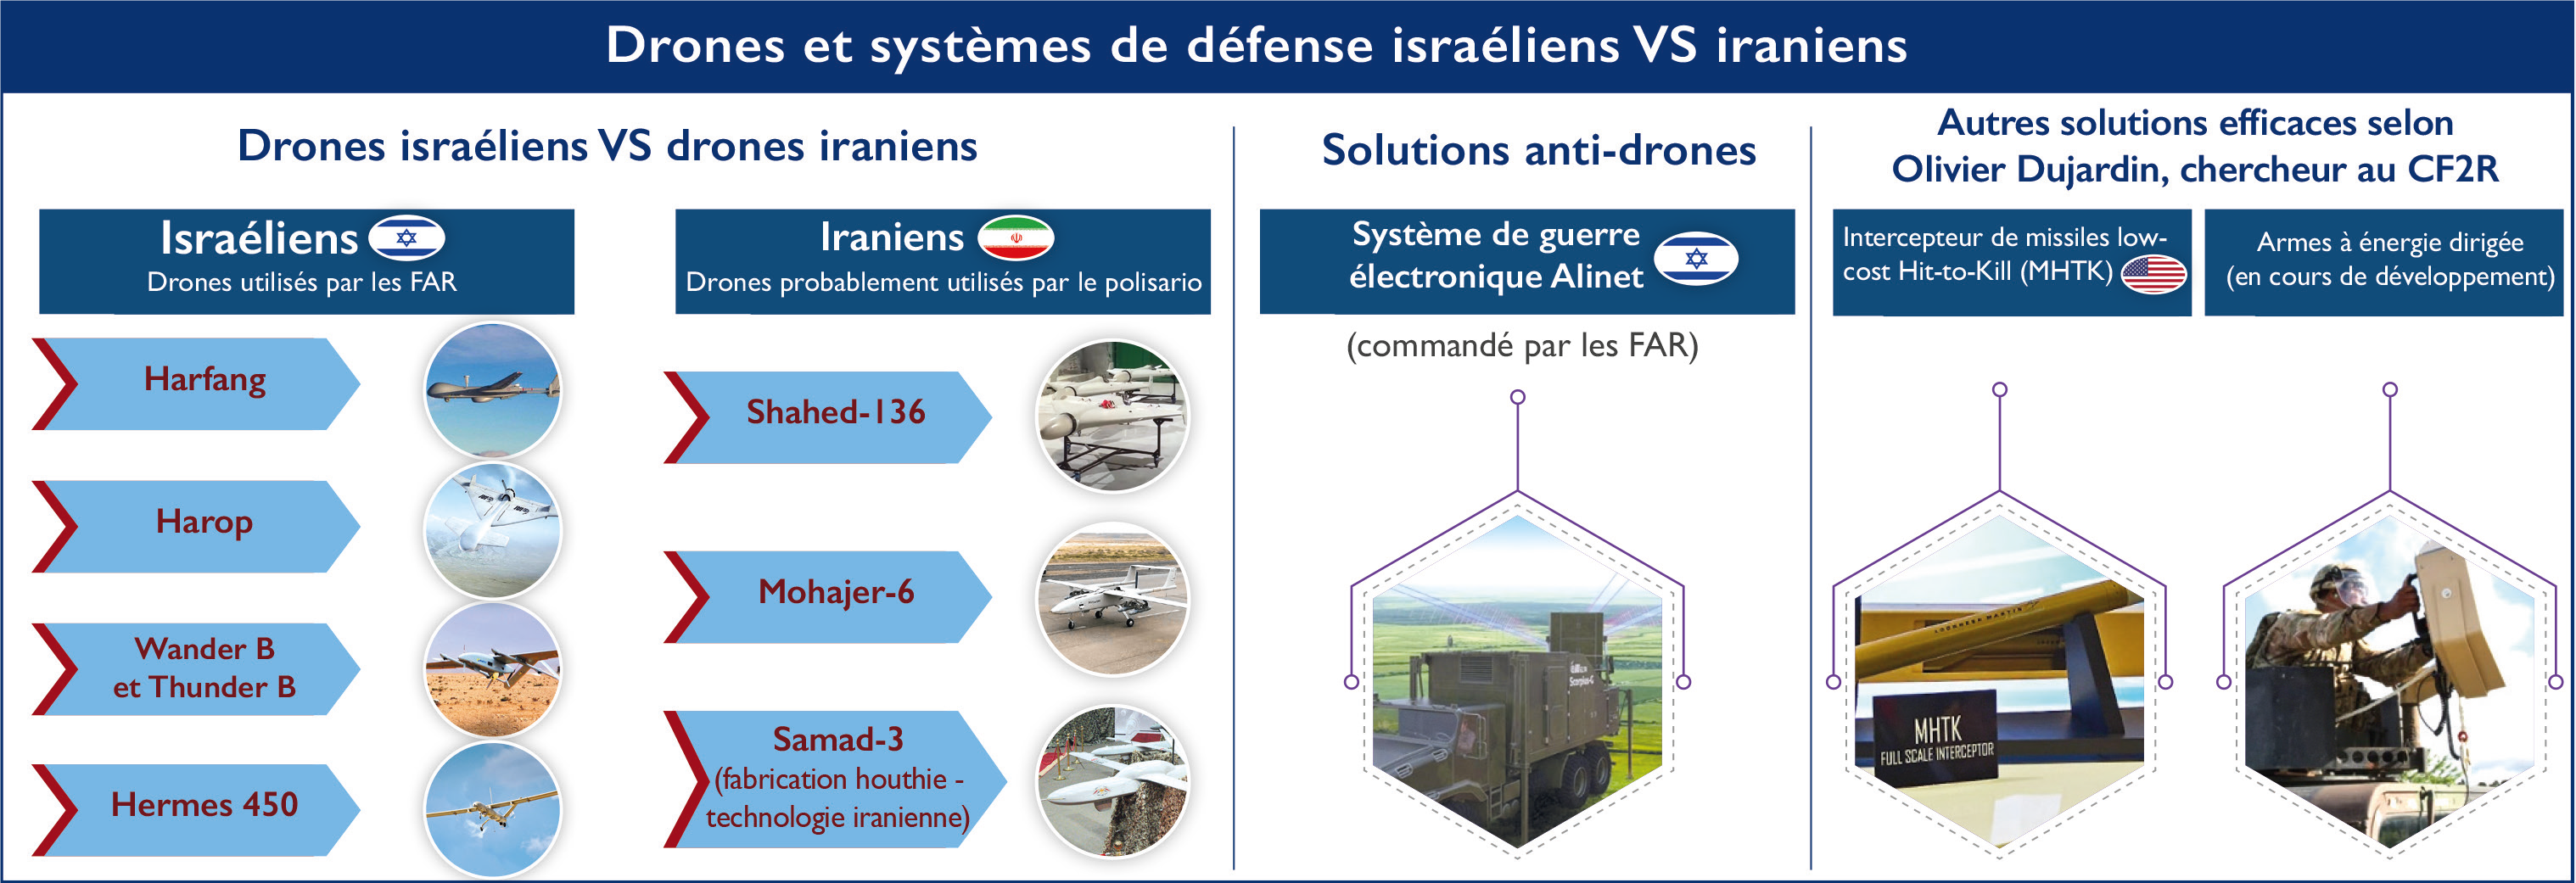 Sahara marocain : Théâtre de confrontation entre drones israéliens et iraniens